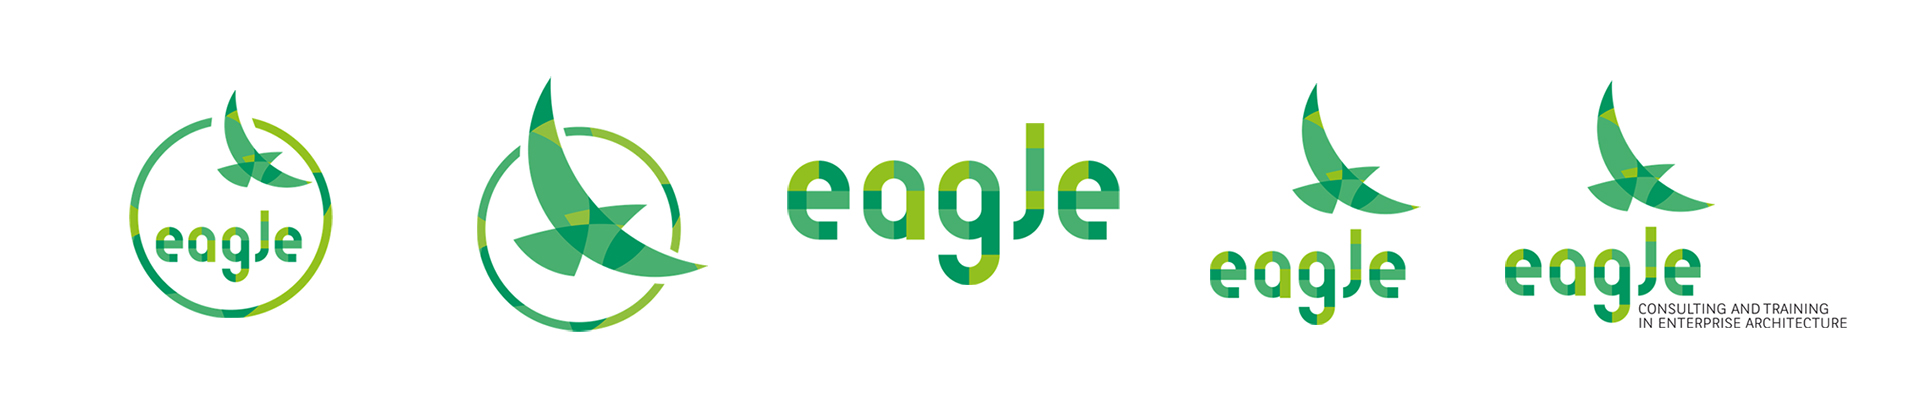 Toutes les déclinaison du logo eagles : dans un cercle avec le nom eagle, l'aigle dans un cercle, le nom eagle, l'aigle et le nom, l'aigle, le nom ainsi que la baseline